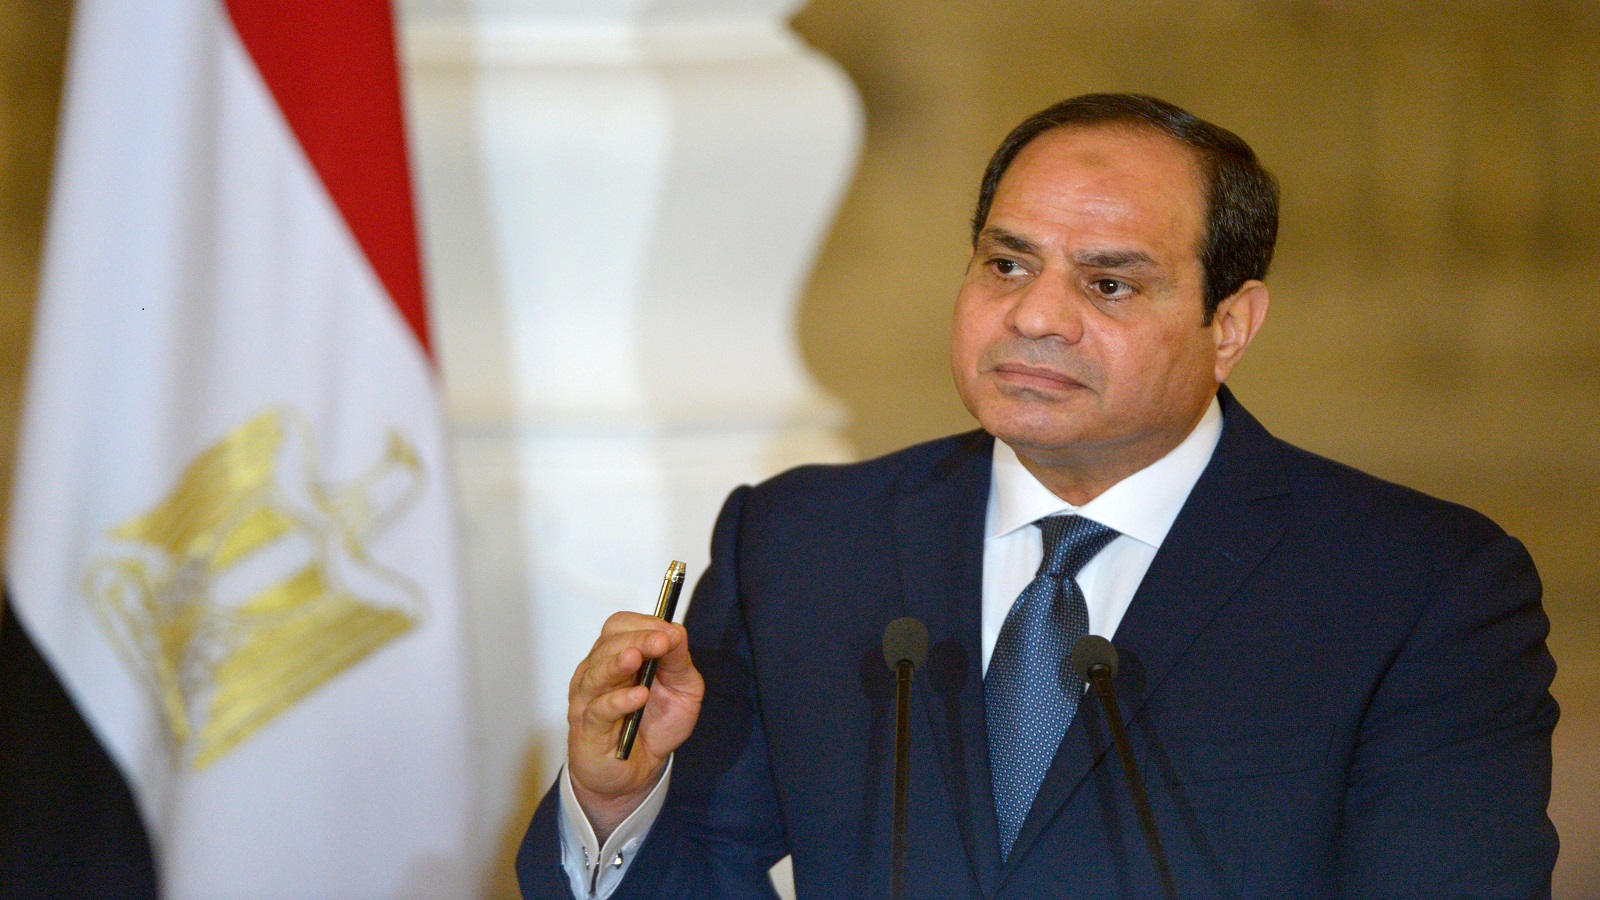 مصر: الأزمة بين السيسي والقضاء قادمة